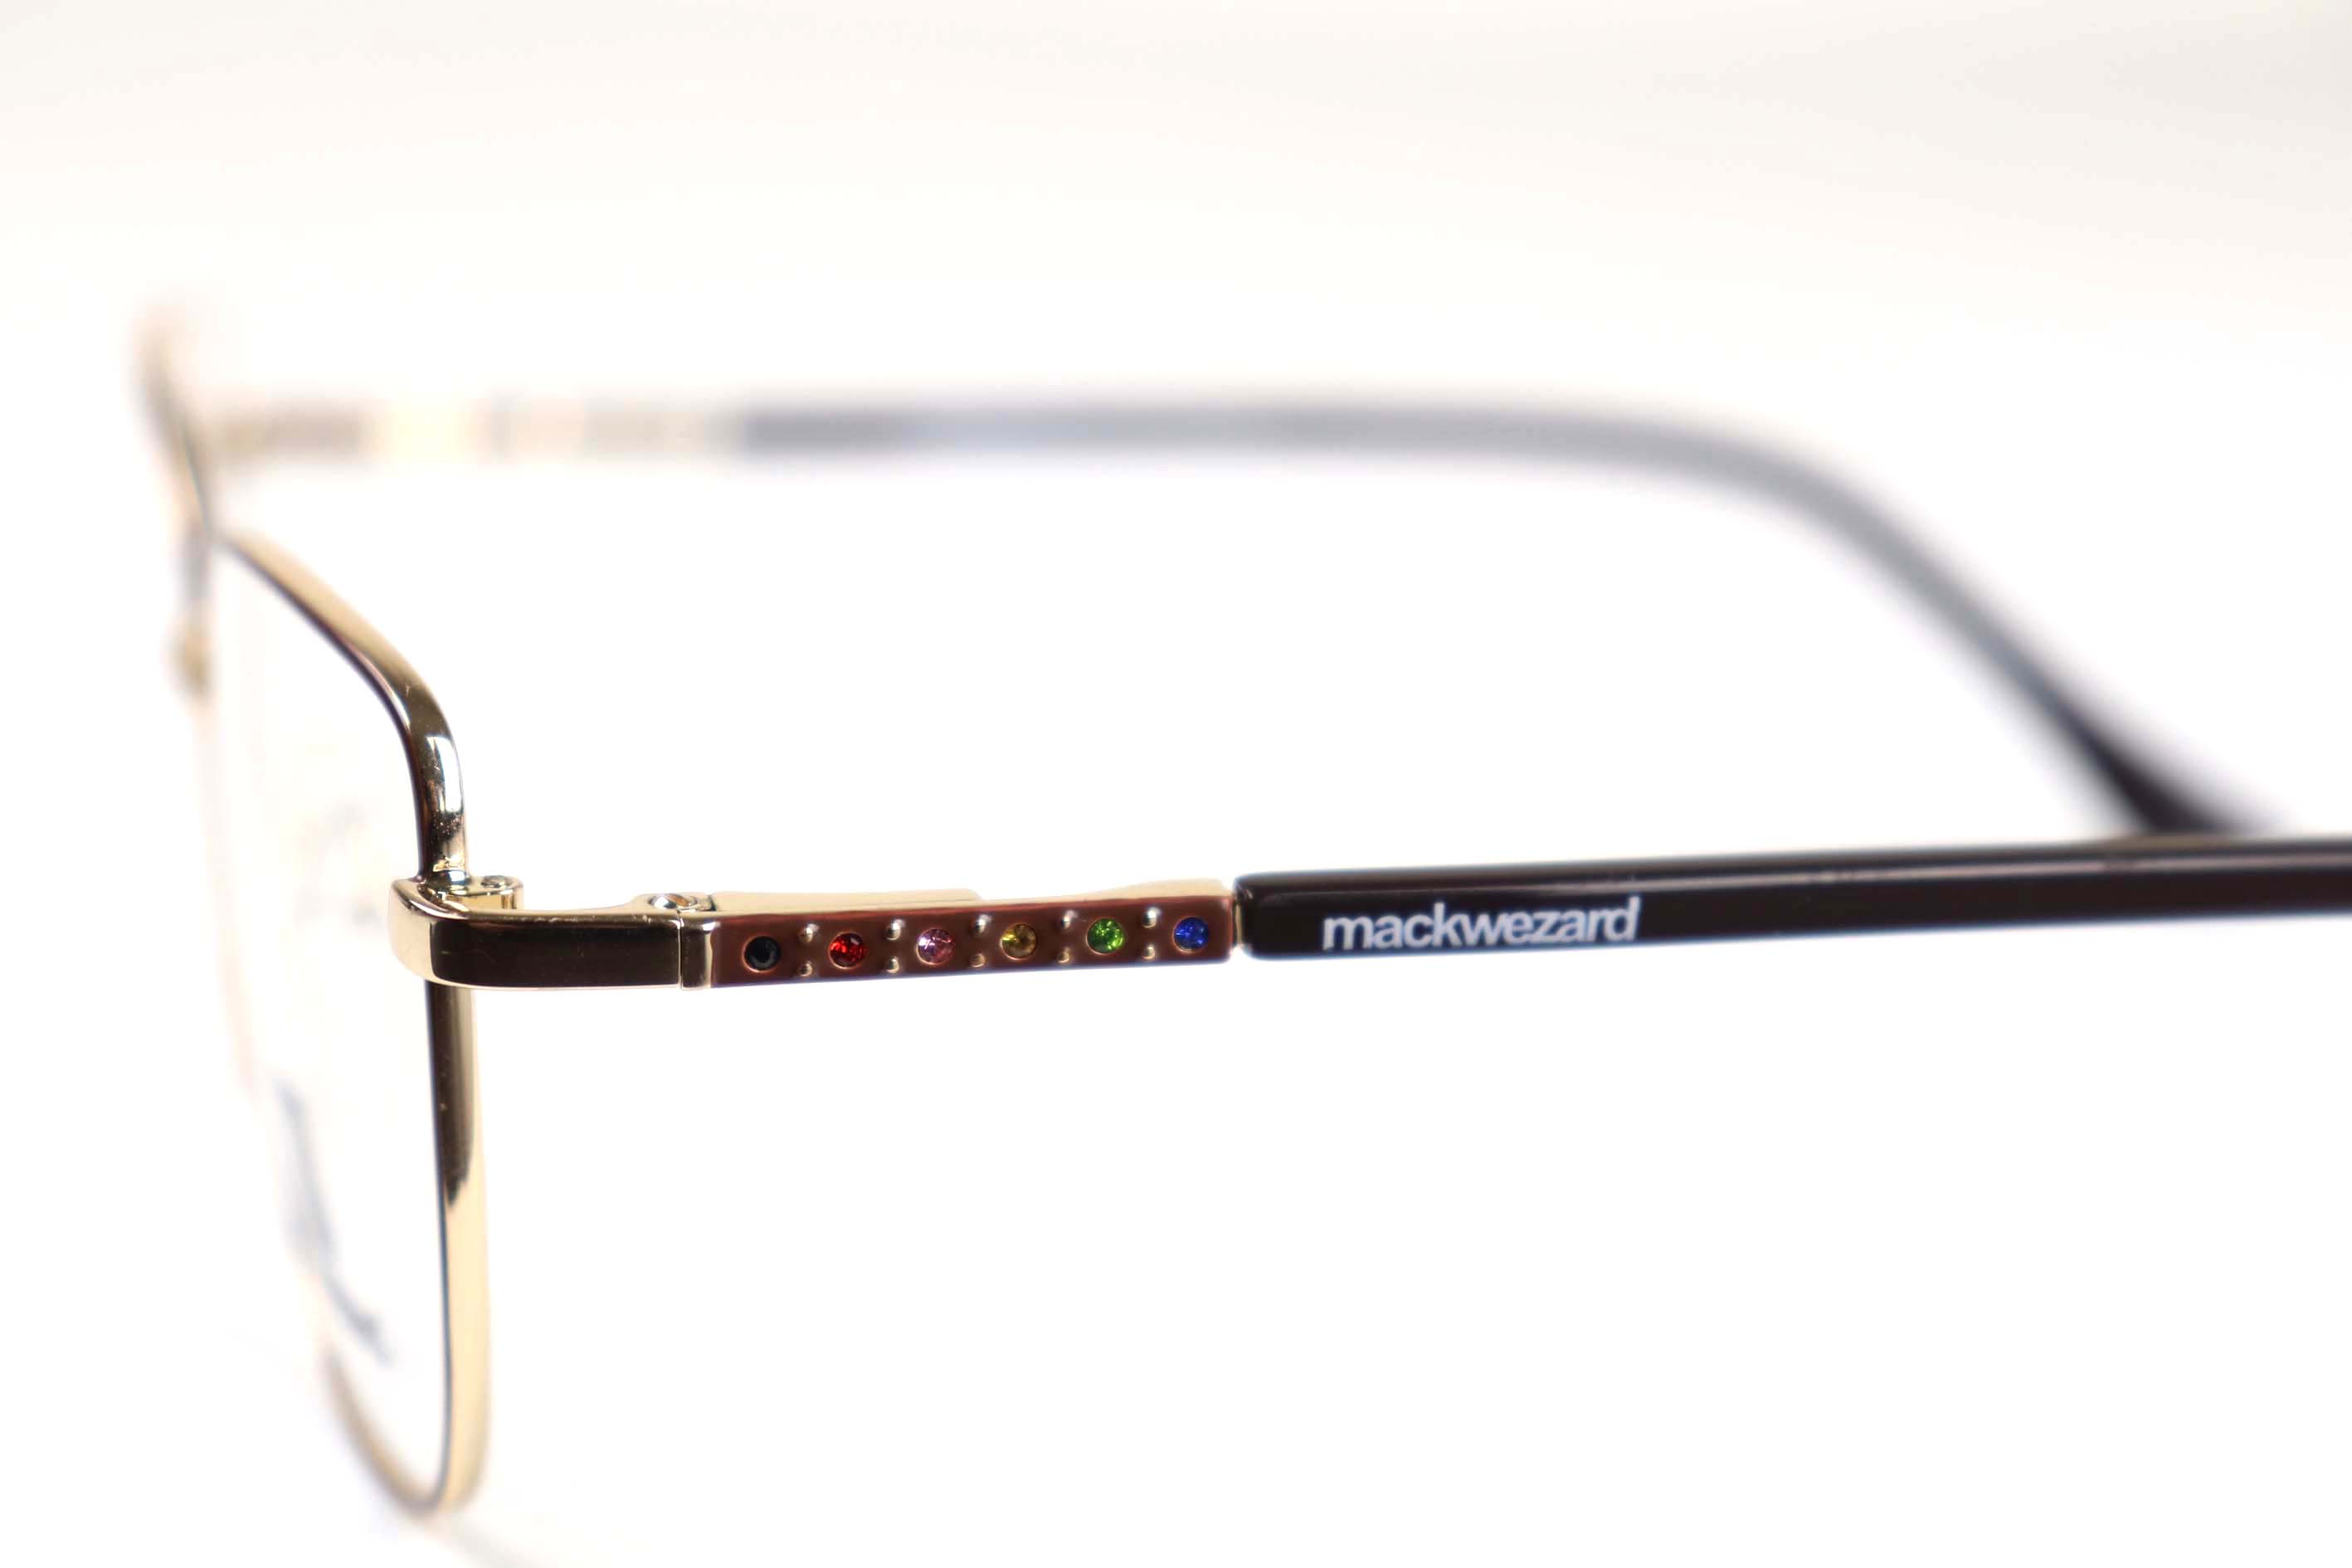 Mackwezard Eyeglasses- 1002-C3-54-18-140